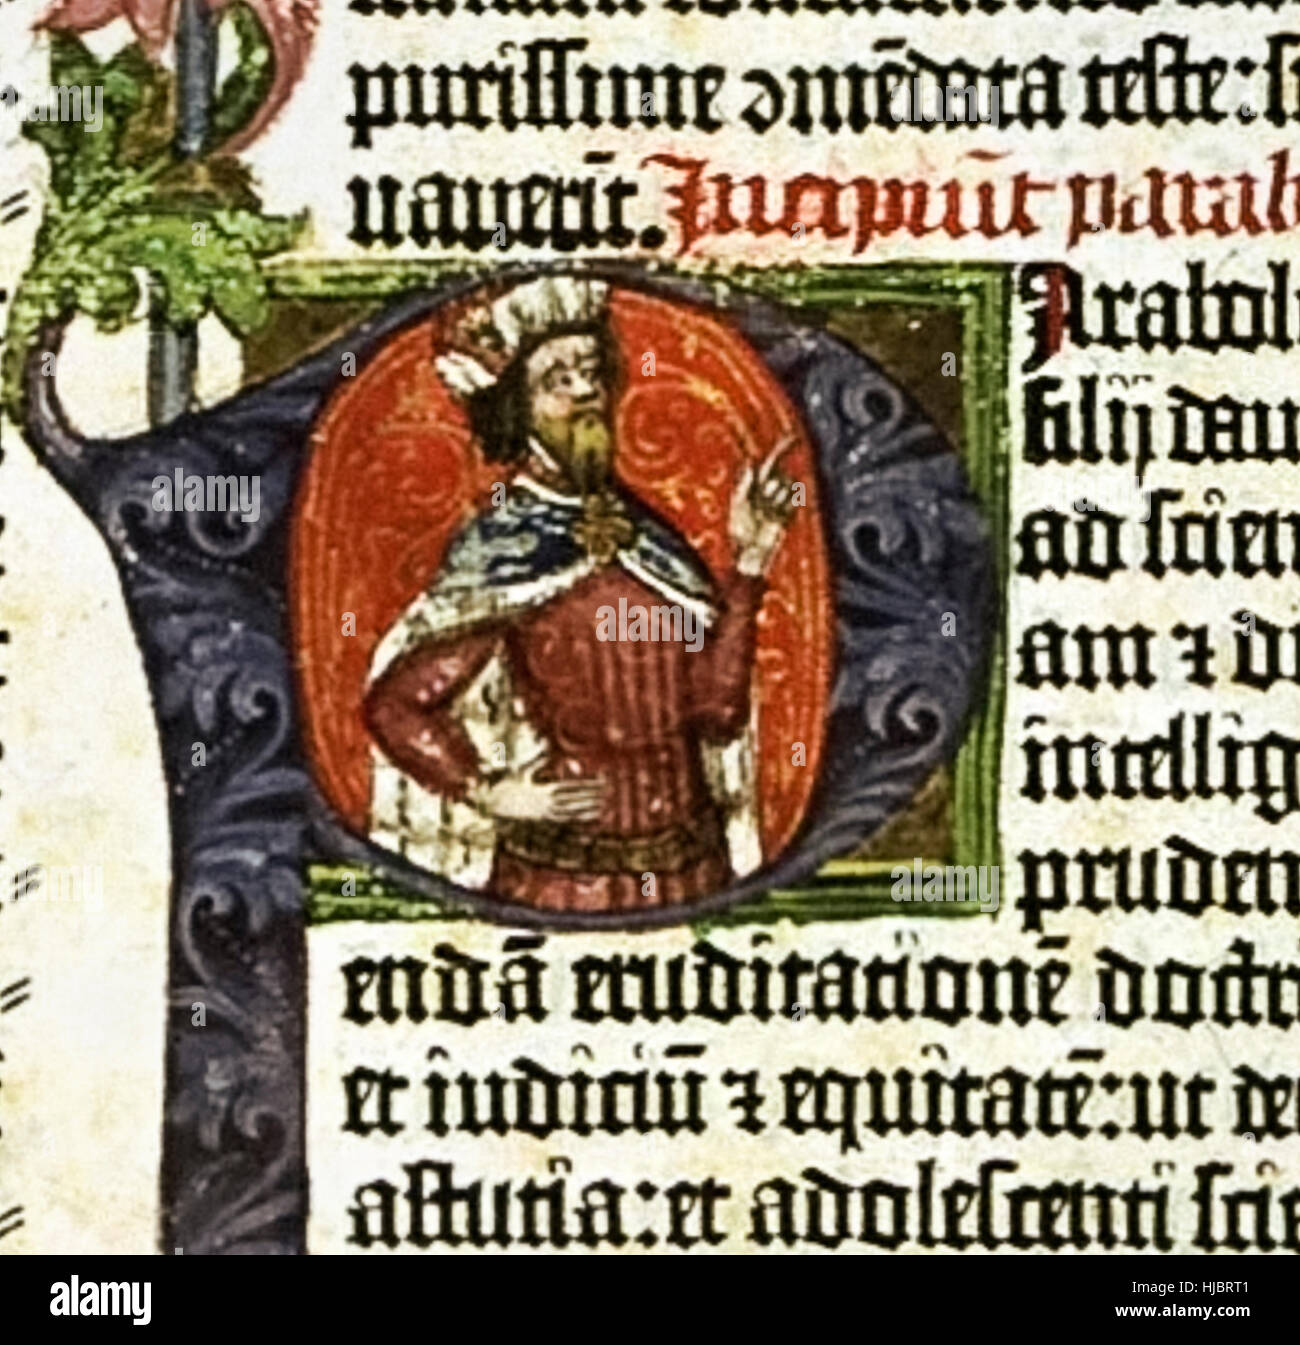 Portrait lumineux du roi Salomon à partir de la lettre 'P' de la 'bible de Gutenberg' le premier produit en masse livre imprimé à Mayence, en Allemagne en 1455 par Johann Gutenberg. Voir la description pour plus d'informations. Banque D'Images